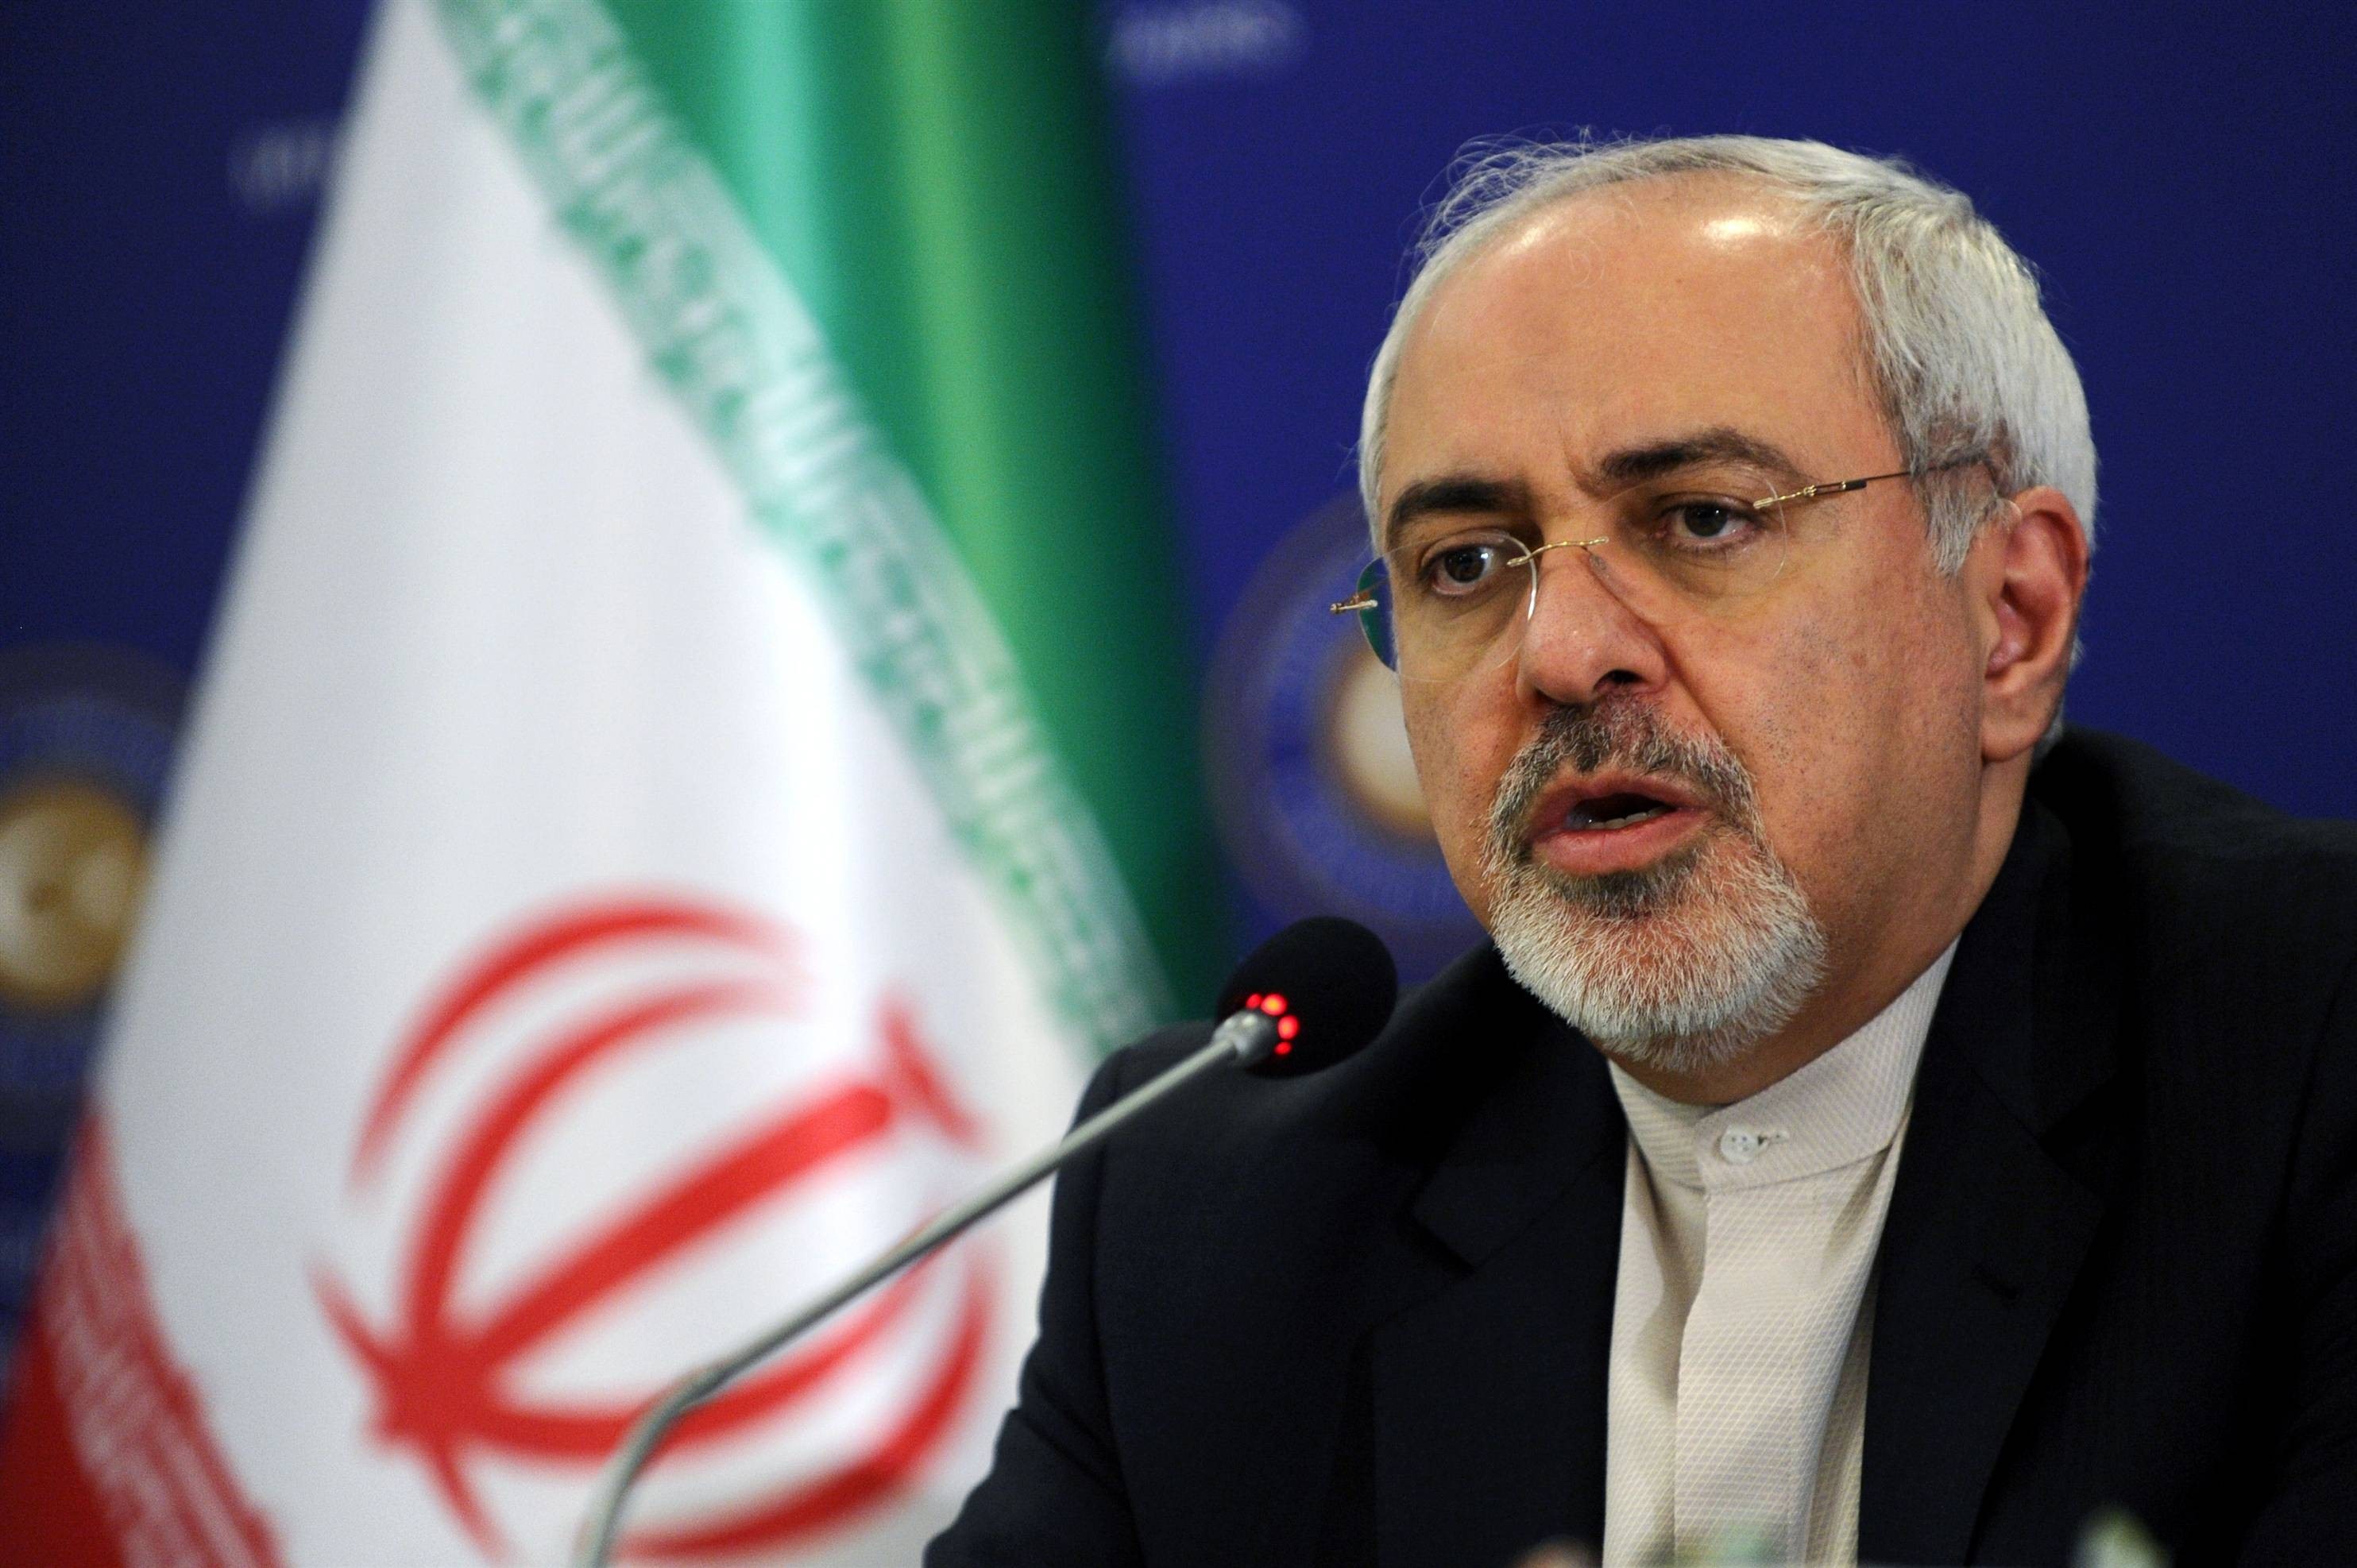 ظریف: خویشتنداری حدی دارد/ مصادره سرمایه ایران، دزدی بزرگ است/ آزمایش موشکی حق ایران است